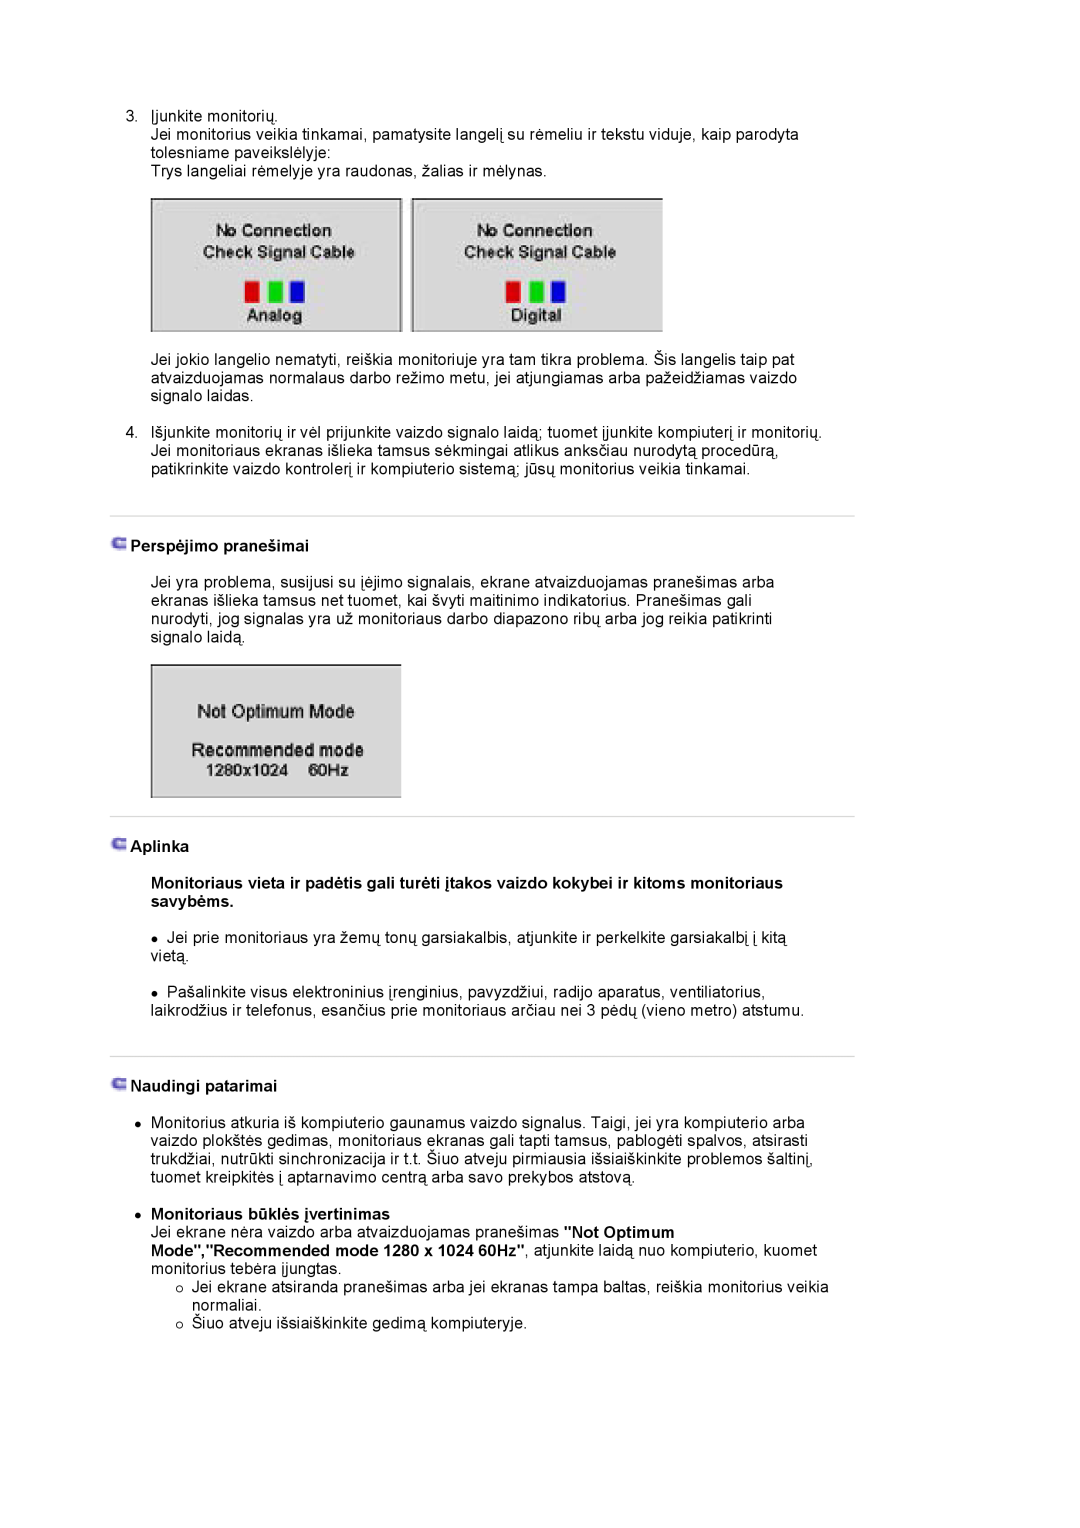 Samsung LS17HJDQHV/EDC manual Perspėjimo pranešimai, Aplinka, Naudingi patarimai, z Monitoriaus būklės įvertinimas 